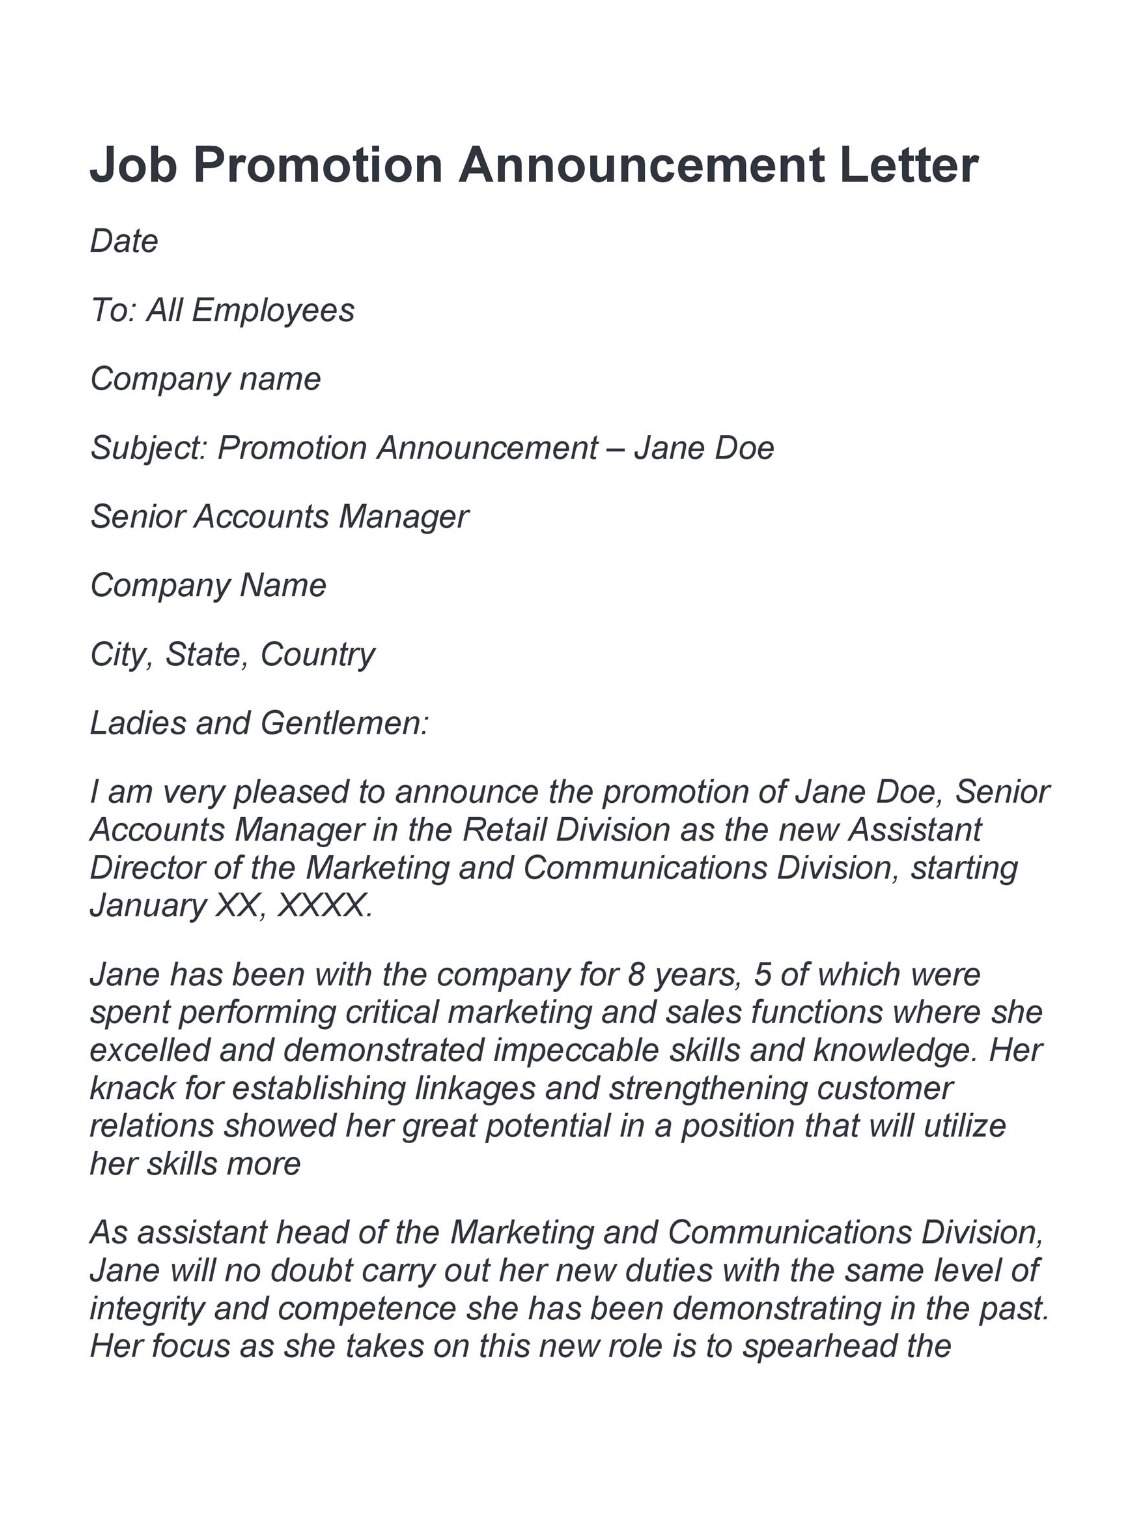 job promotion announcement letter template